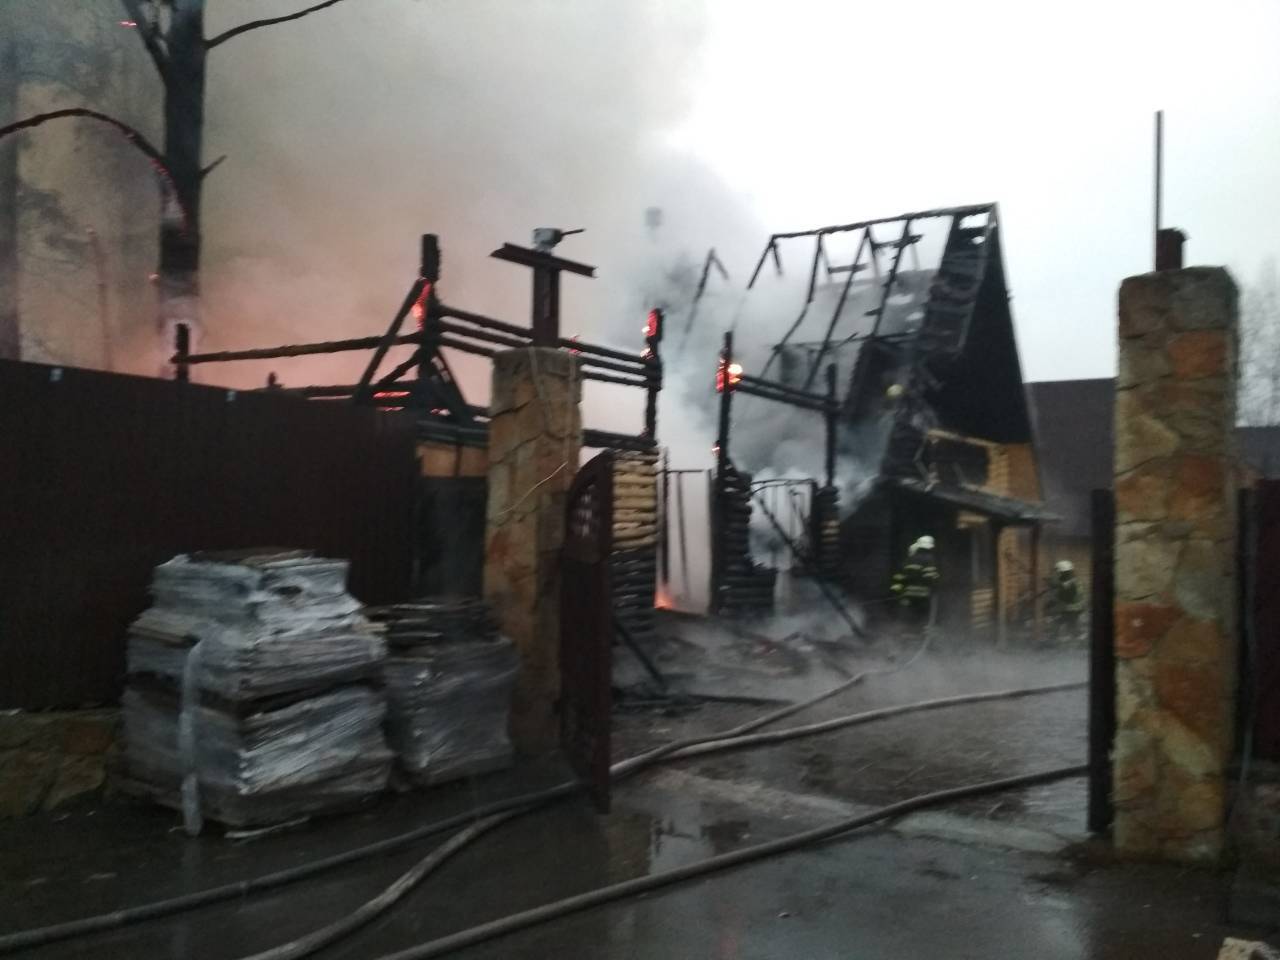 Под Киевом загорелся известный ресторан: в сеть попало видео